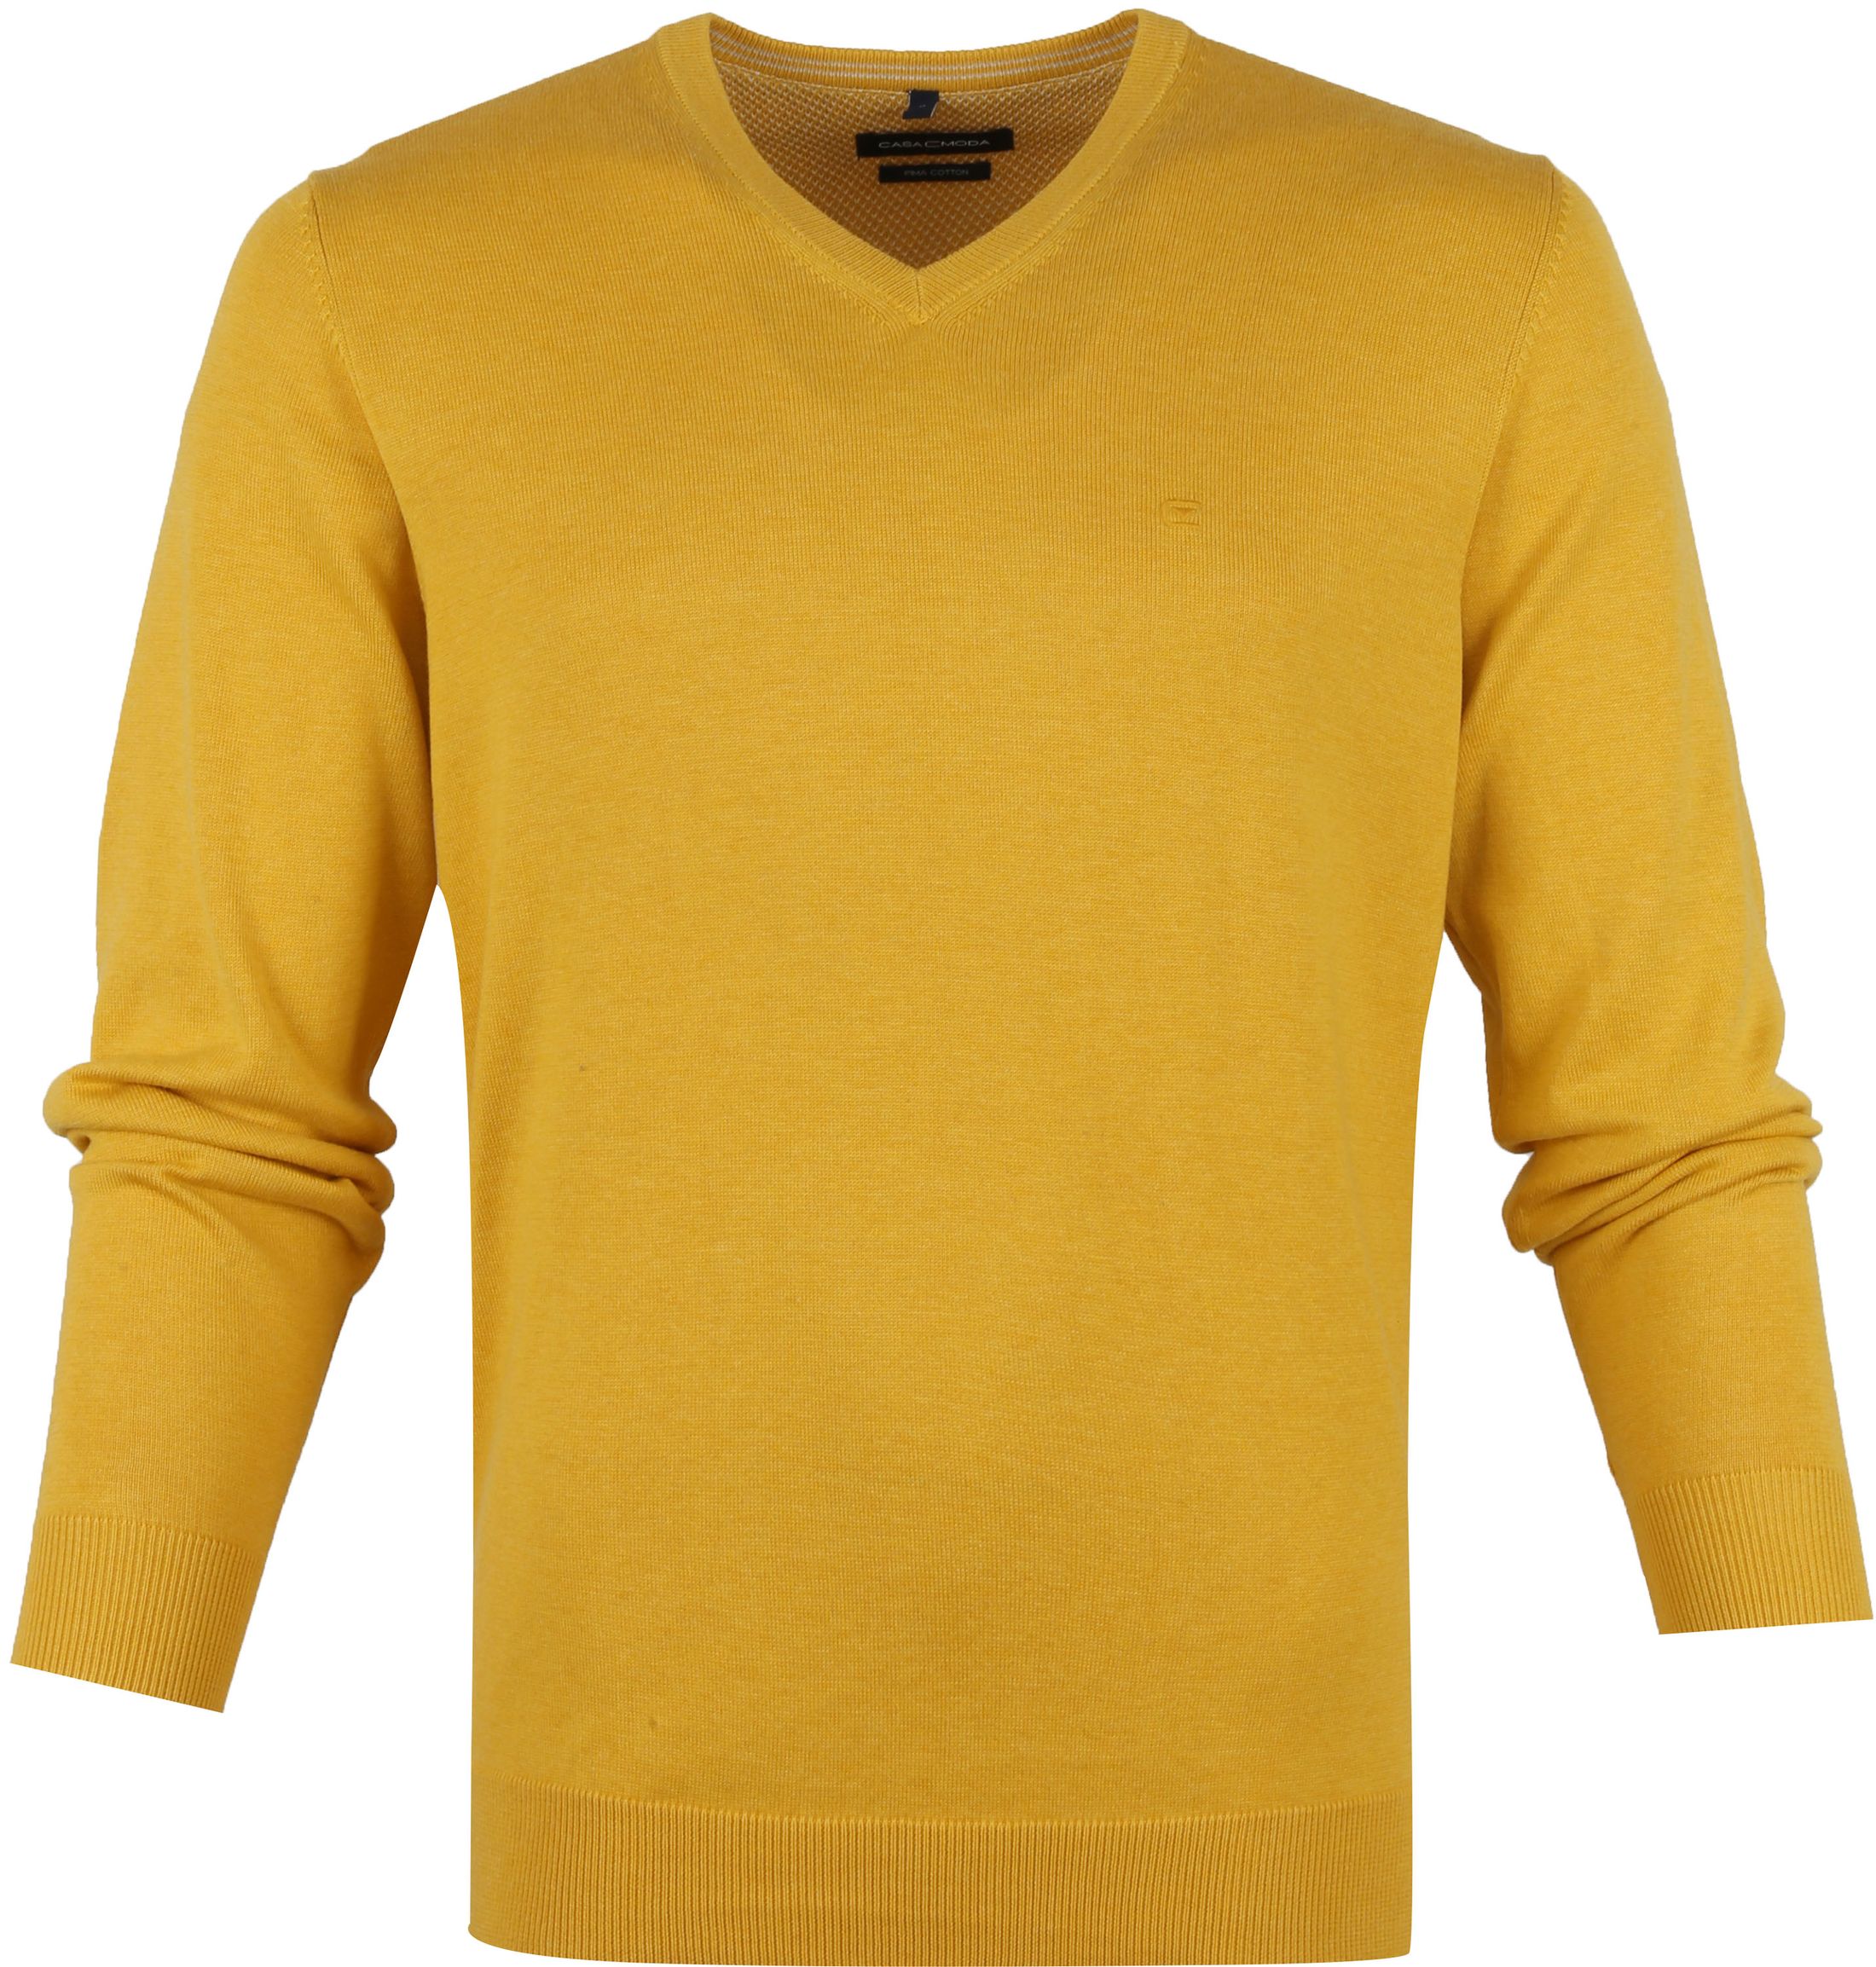 Casa Moda Pullover V-neck Yellow size L